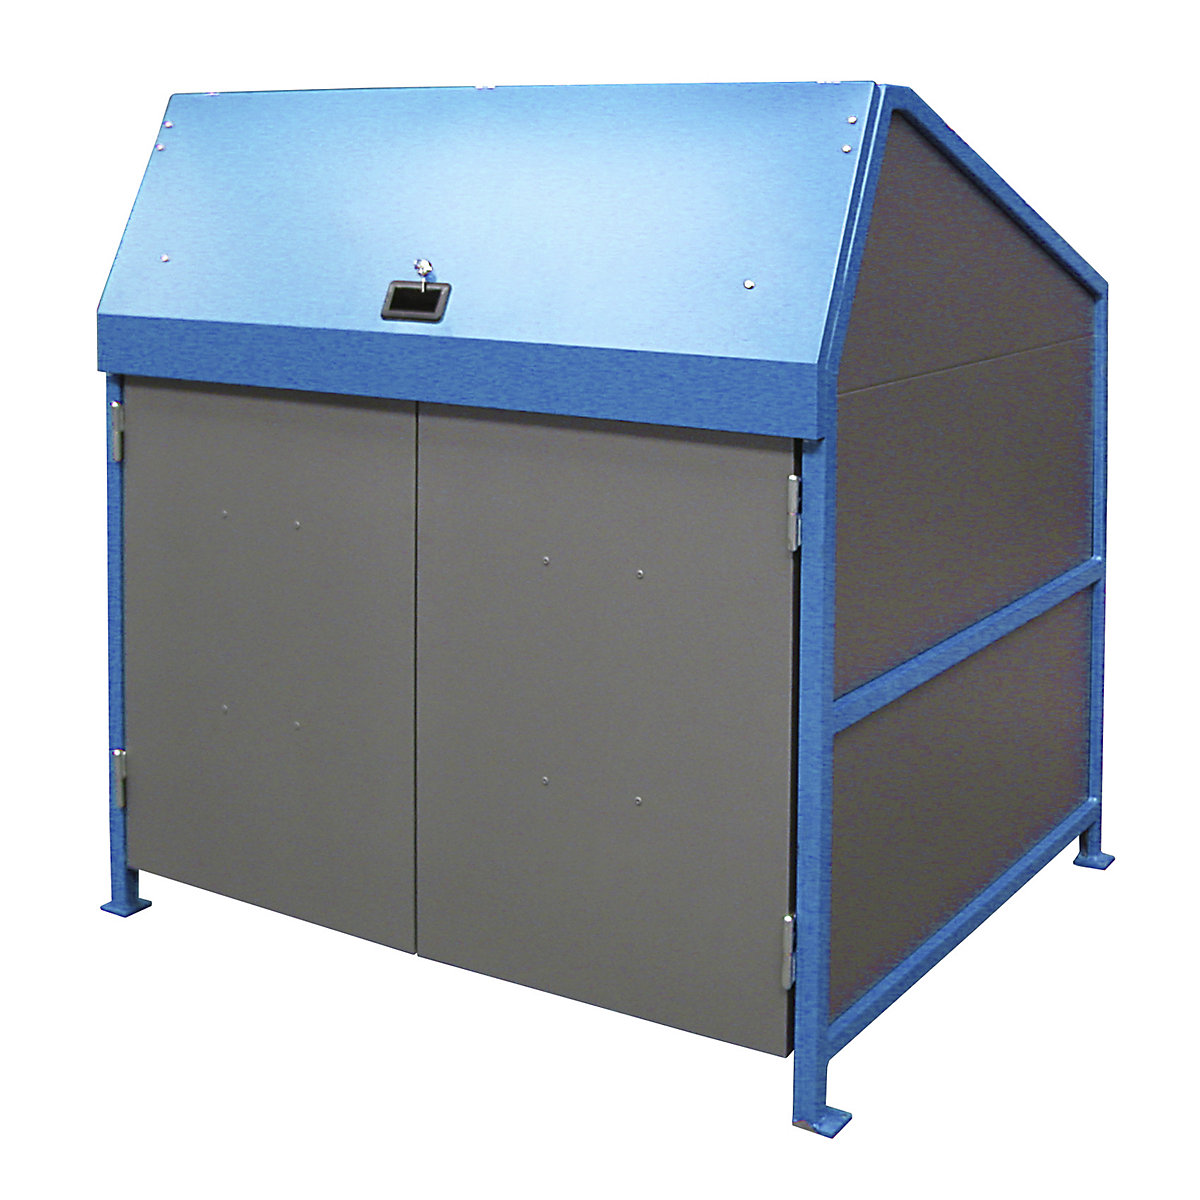 EUROKRAFTpro – Abri pour poubelles, fermé des 4 côtés, avec portes, coloris cadre bleu